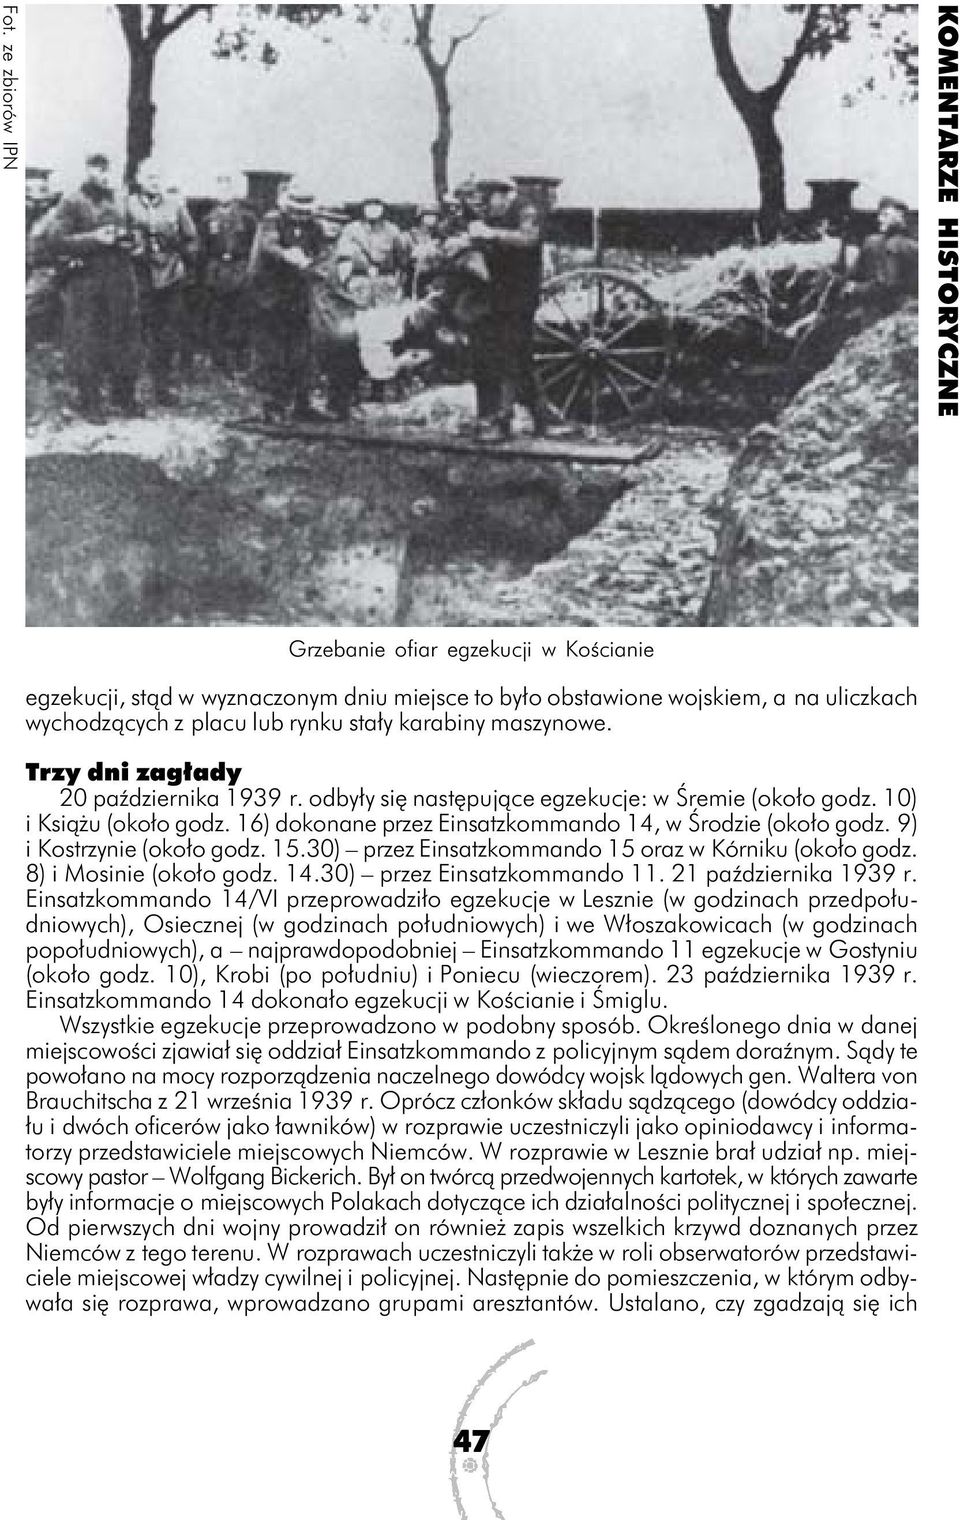 9) i Kostrzynie (około godz. 15.30) przez Einsatzkommando 15 oraz w Kórniku (około godz. 8) i Mosinie (około godz. 14.30) przez Einsatzkommando 11. 21 października 1939 r.